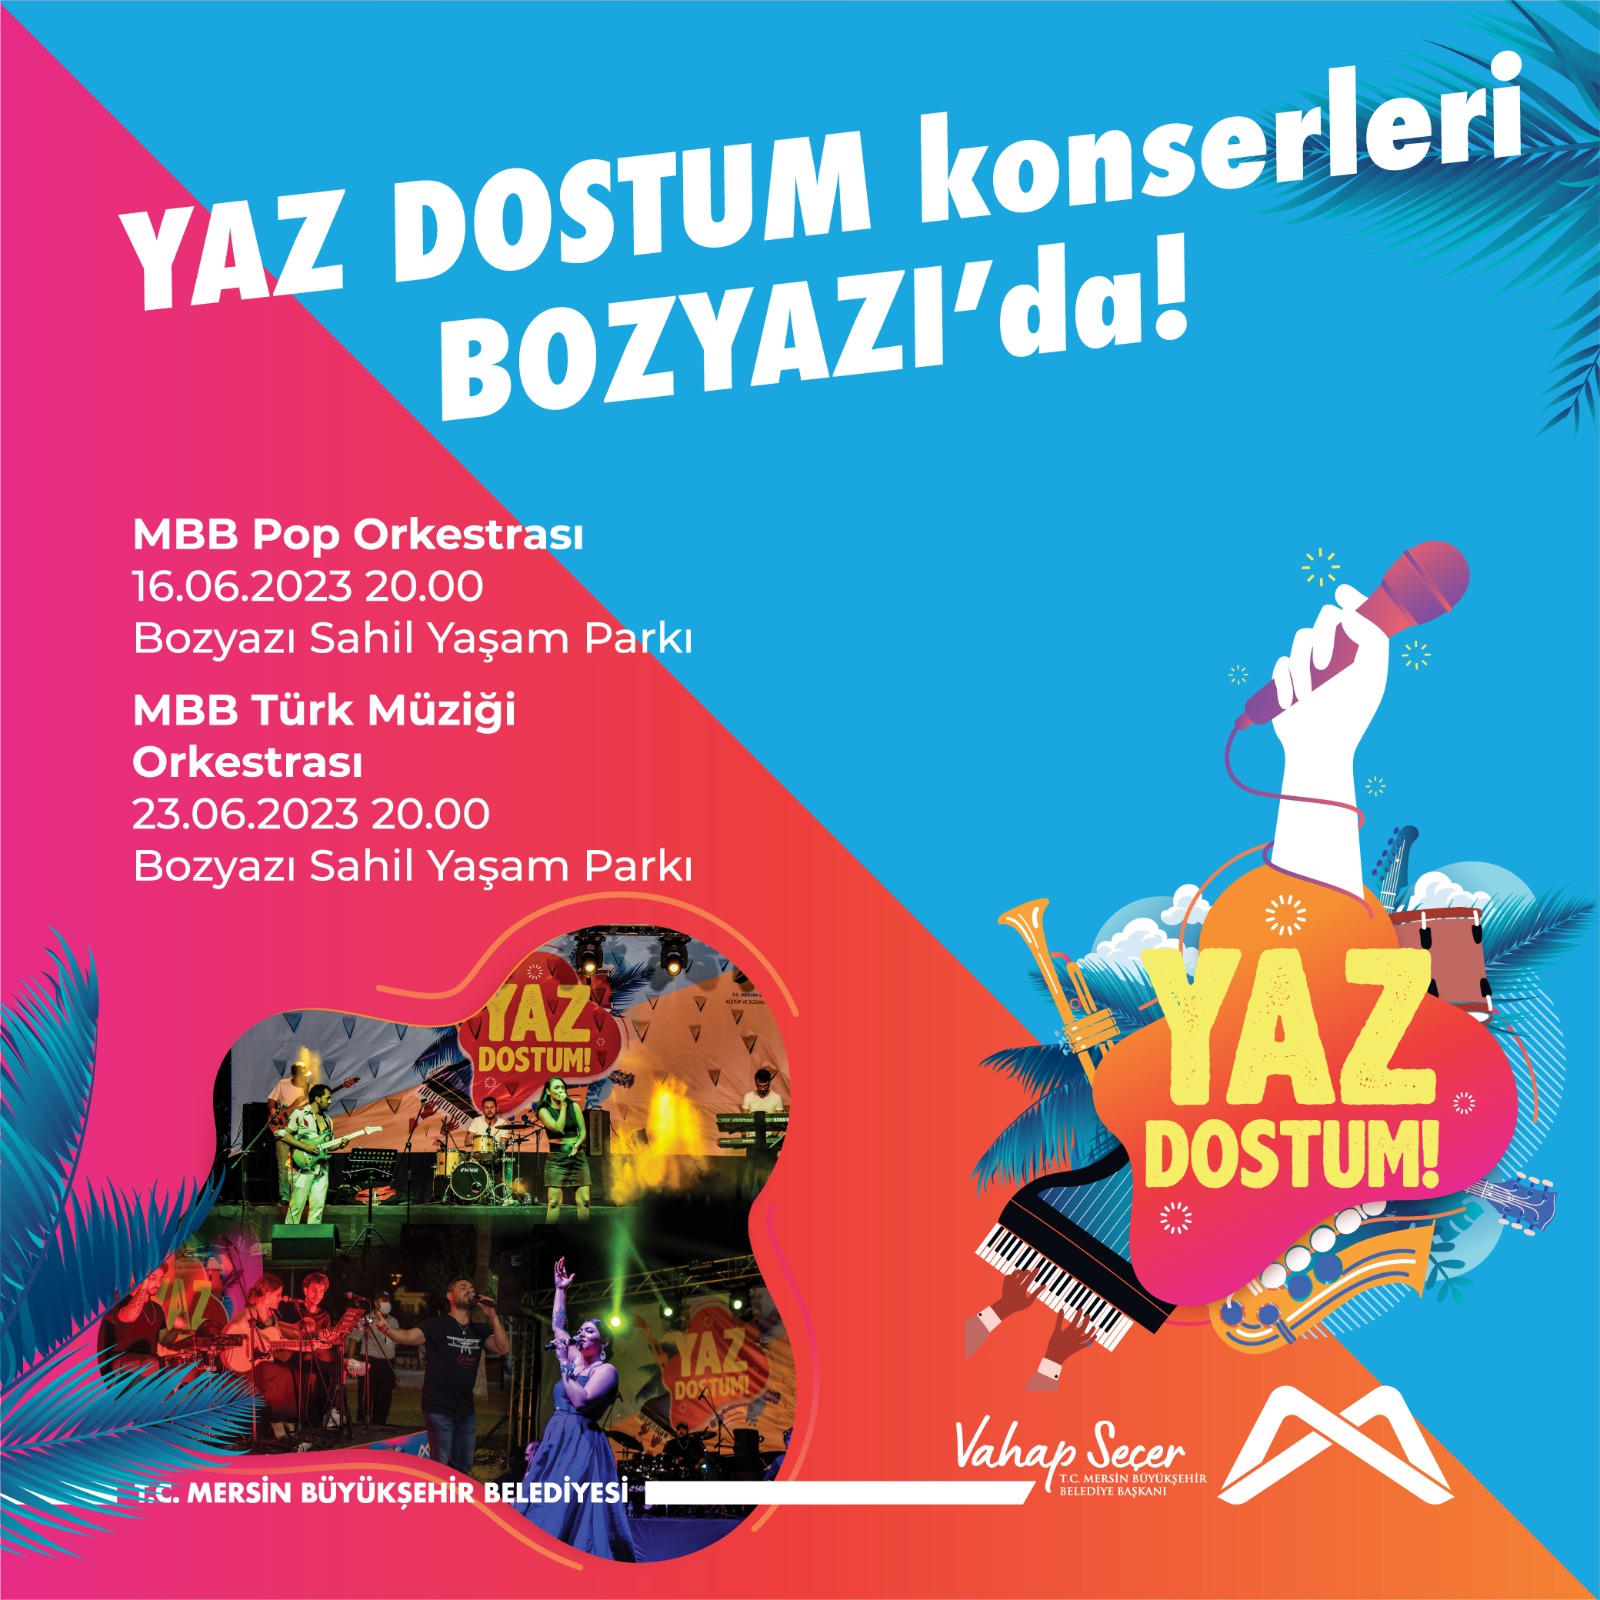 YAZ DOSTUM konserleri Bozyazı'da!